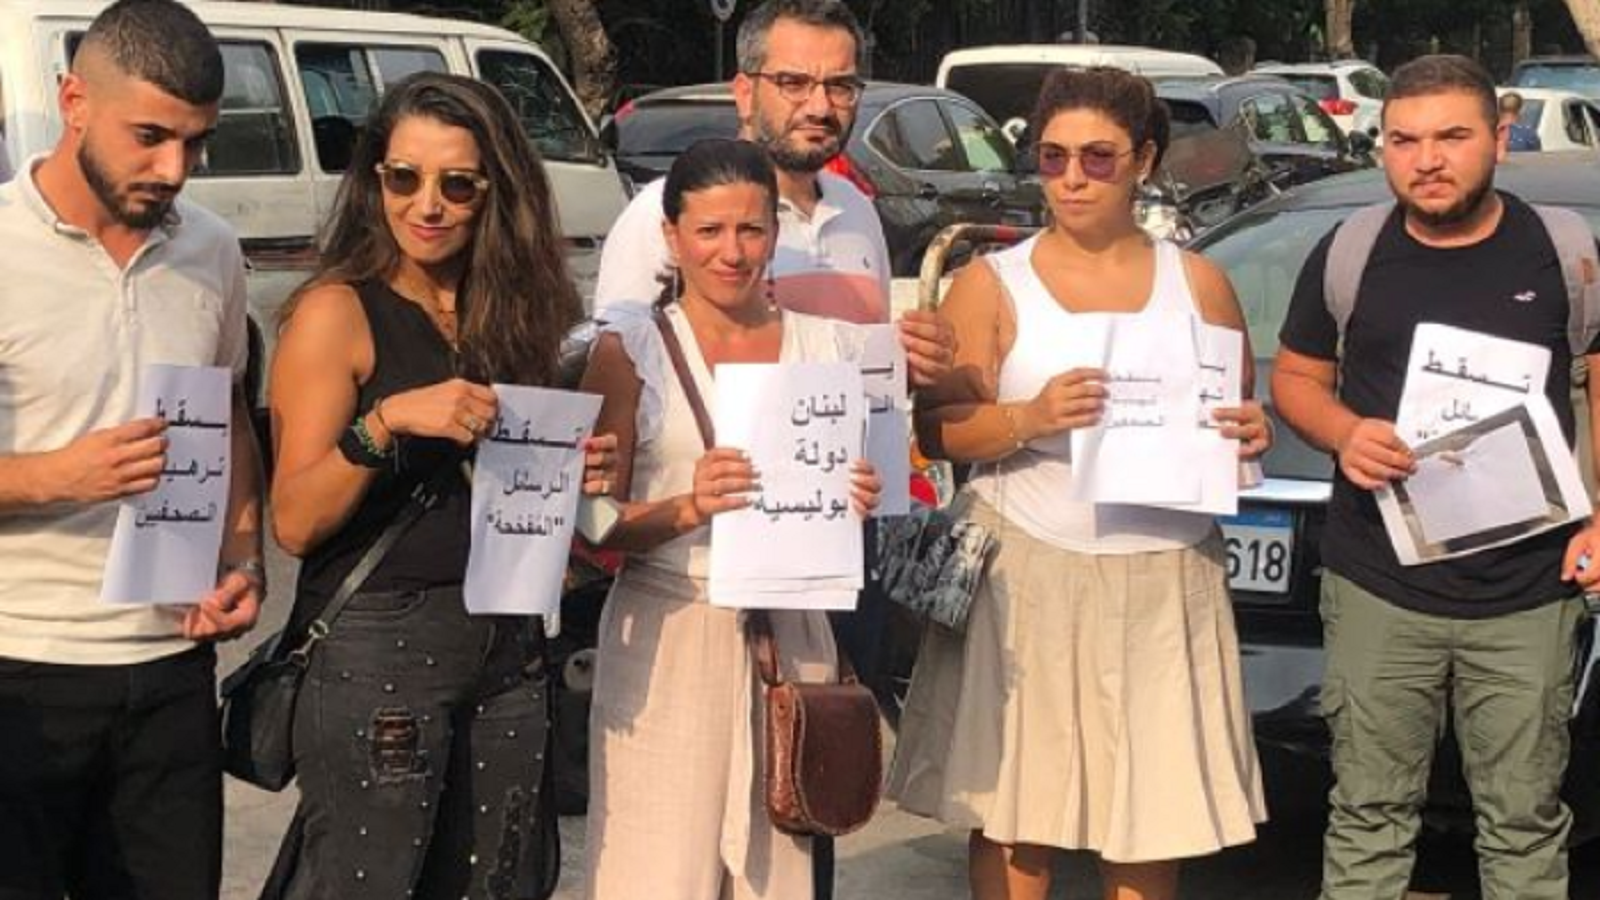 18 كياناً إعلامياً لبنانياً يرفض التحريض:لا حياد بمعركة الحريات